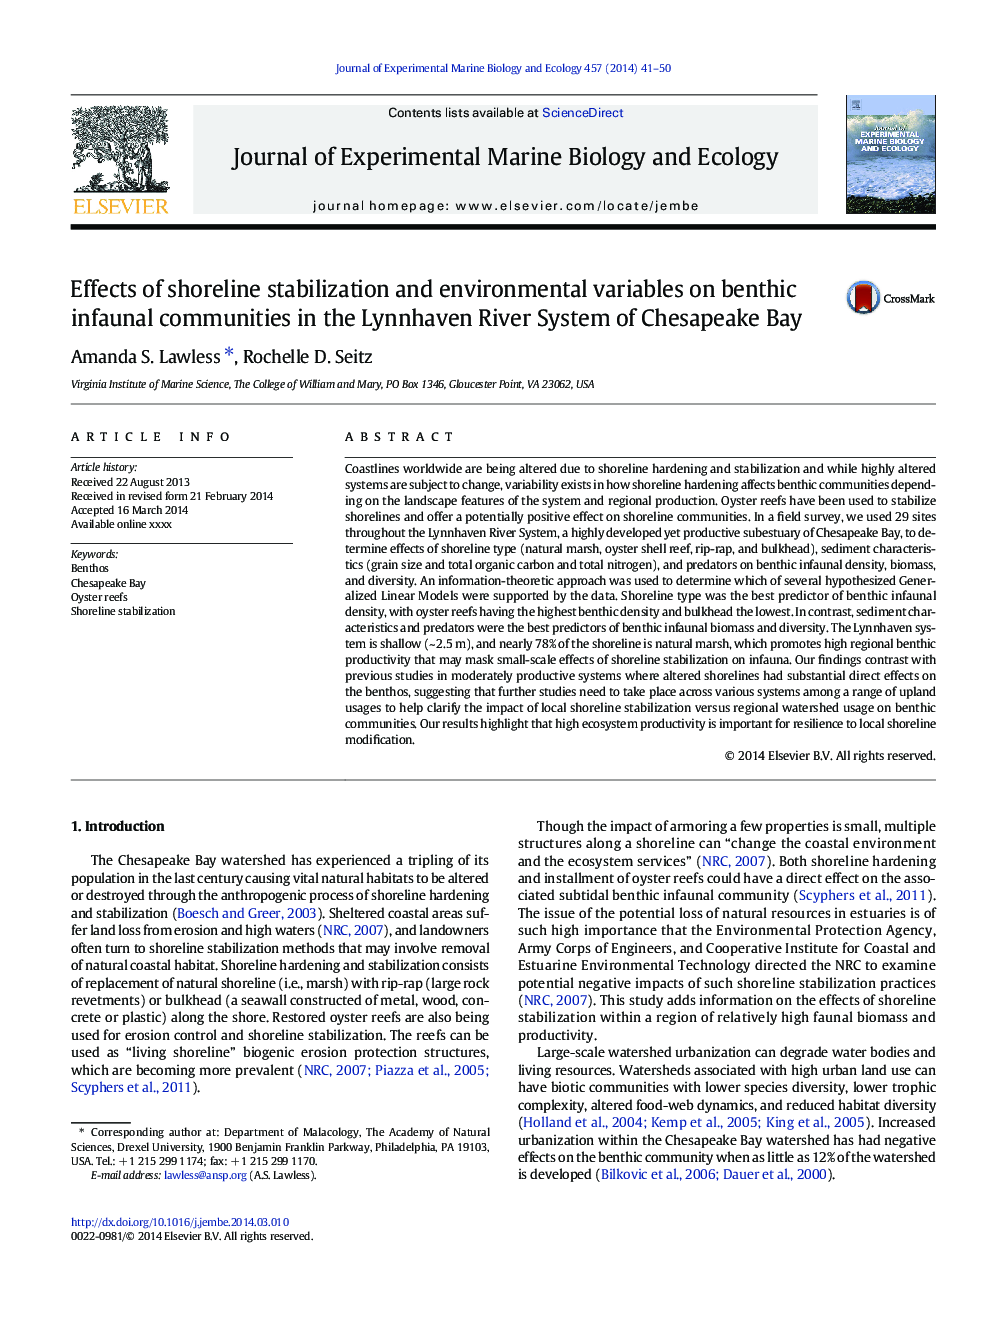 تأثیر تثبیت کننده های ساحلی و متغیرهای محیطی بر جوامع فضایی بتس در سیستم رودخانه لینون هاین در خلیج چساپیک 